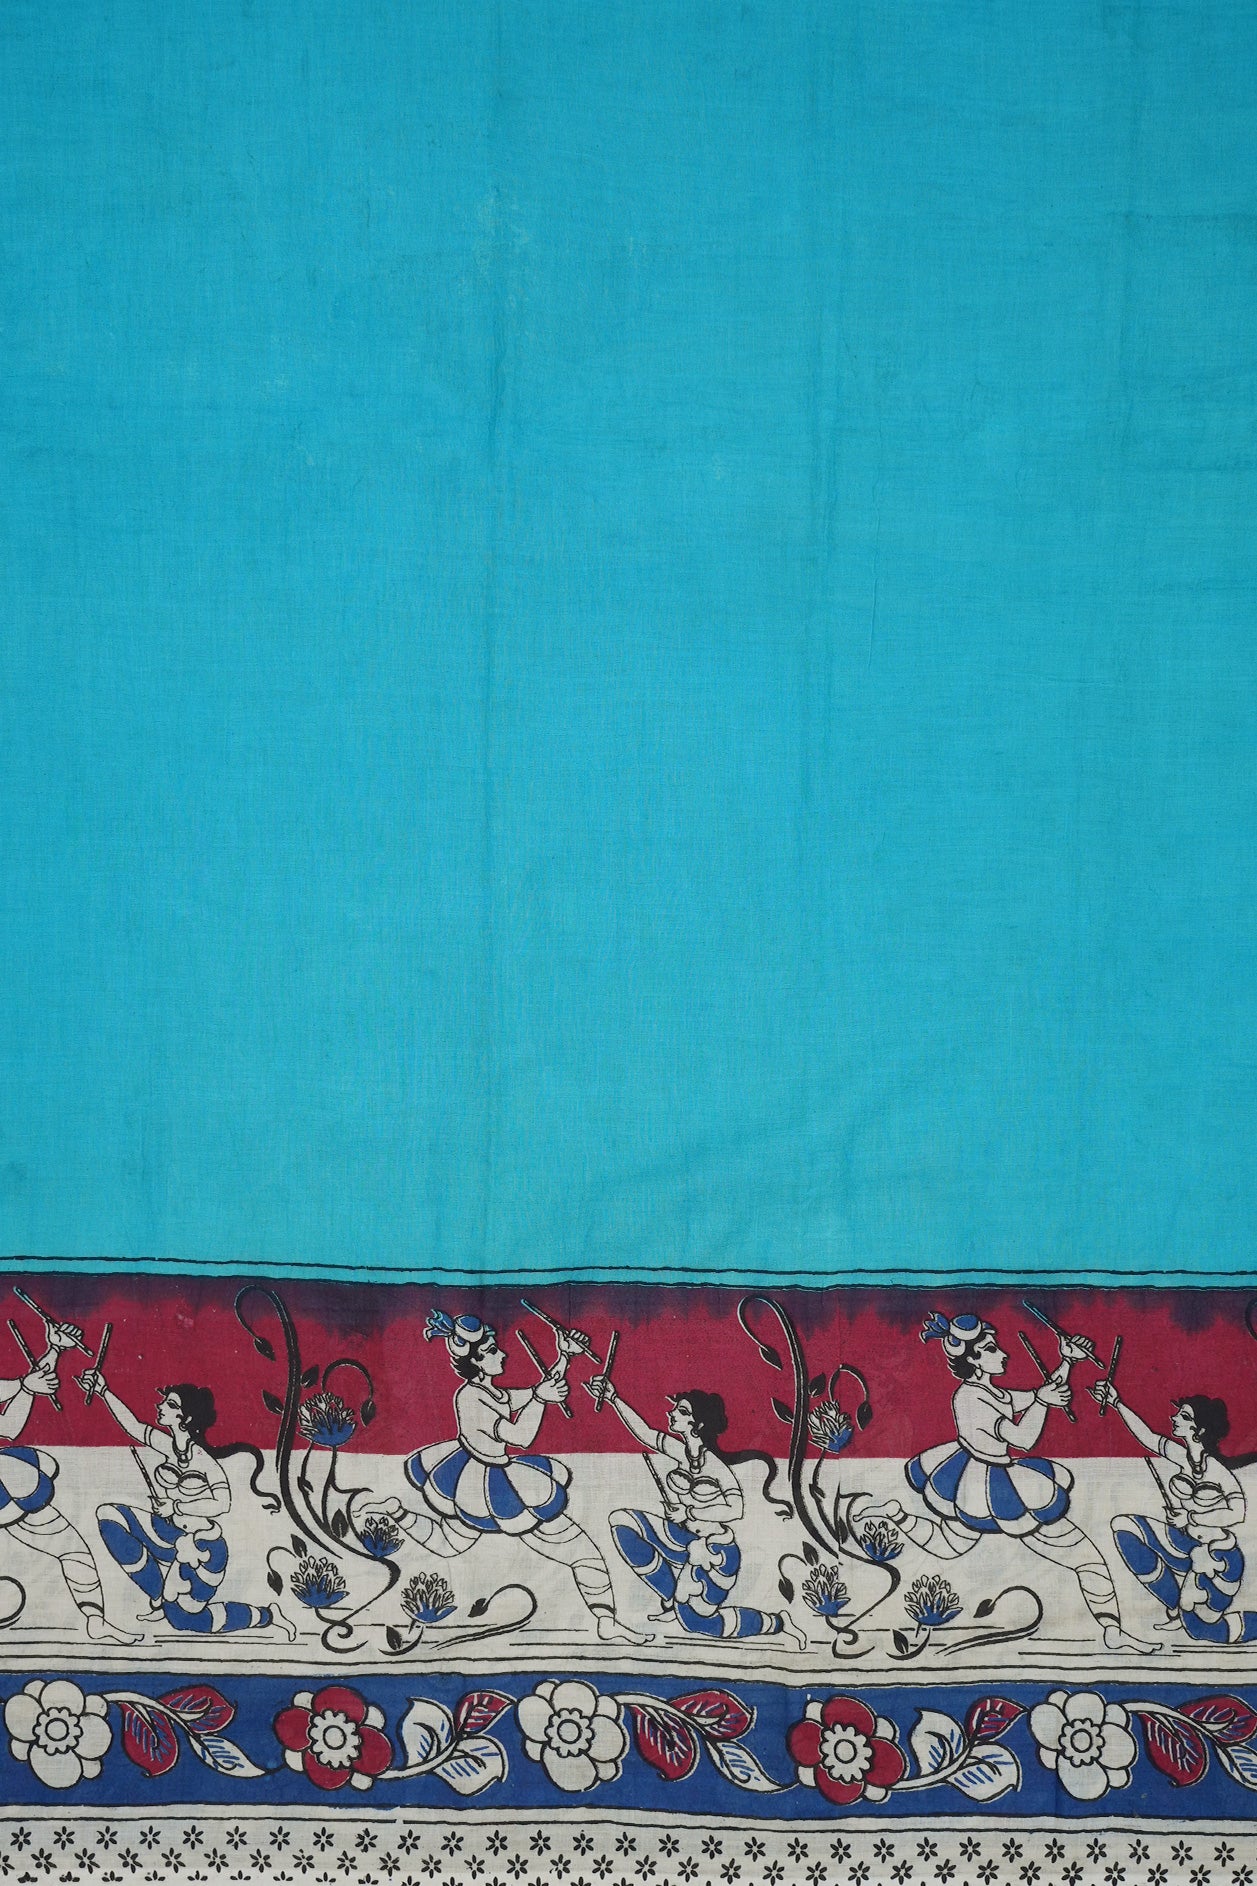 Human Figure And Floral Design Border Deep Sky Blue Printed Kalamkari Cotton Saree